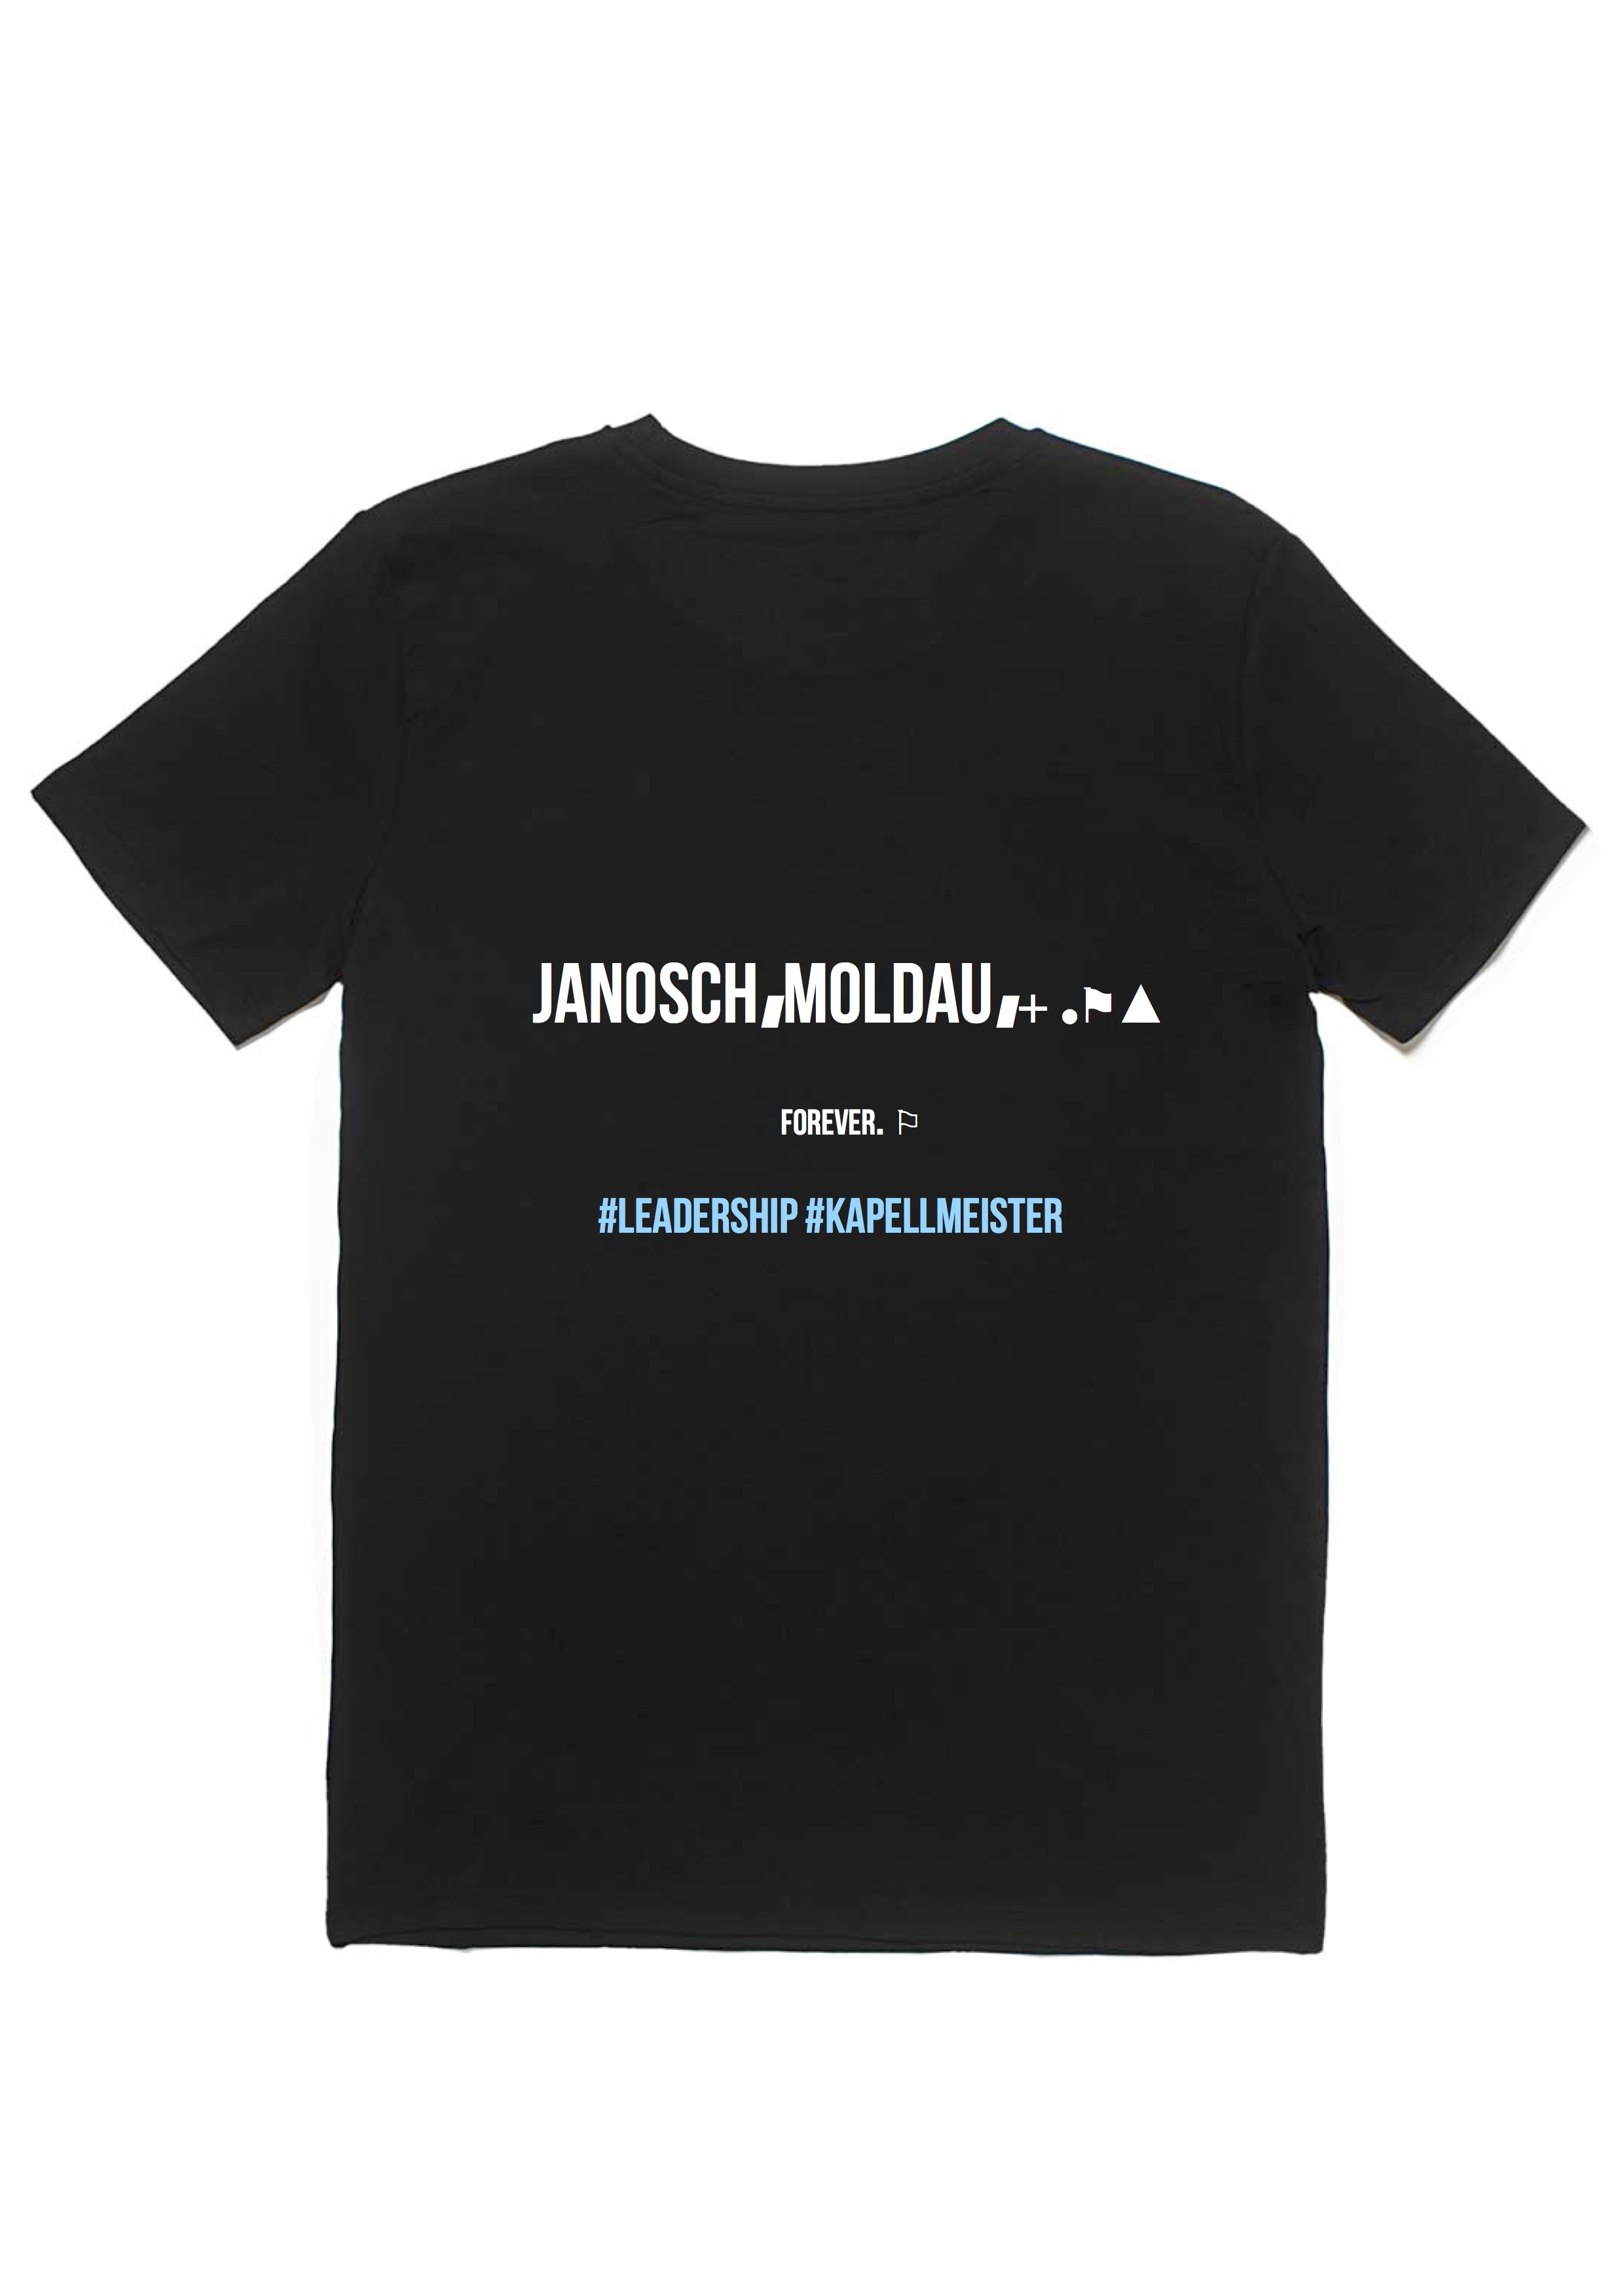 jm leadership tshirt (special fanclub edition)